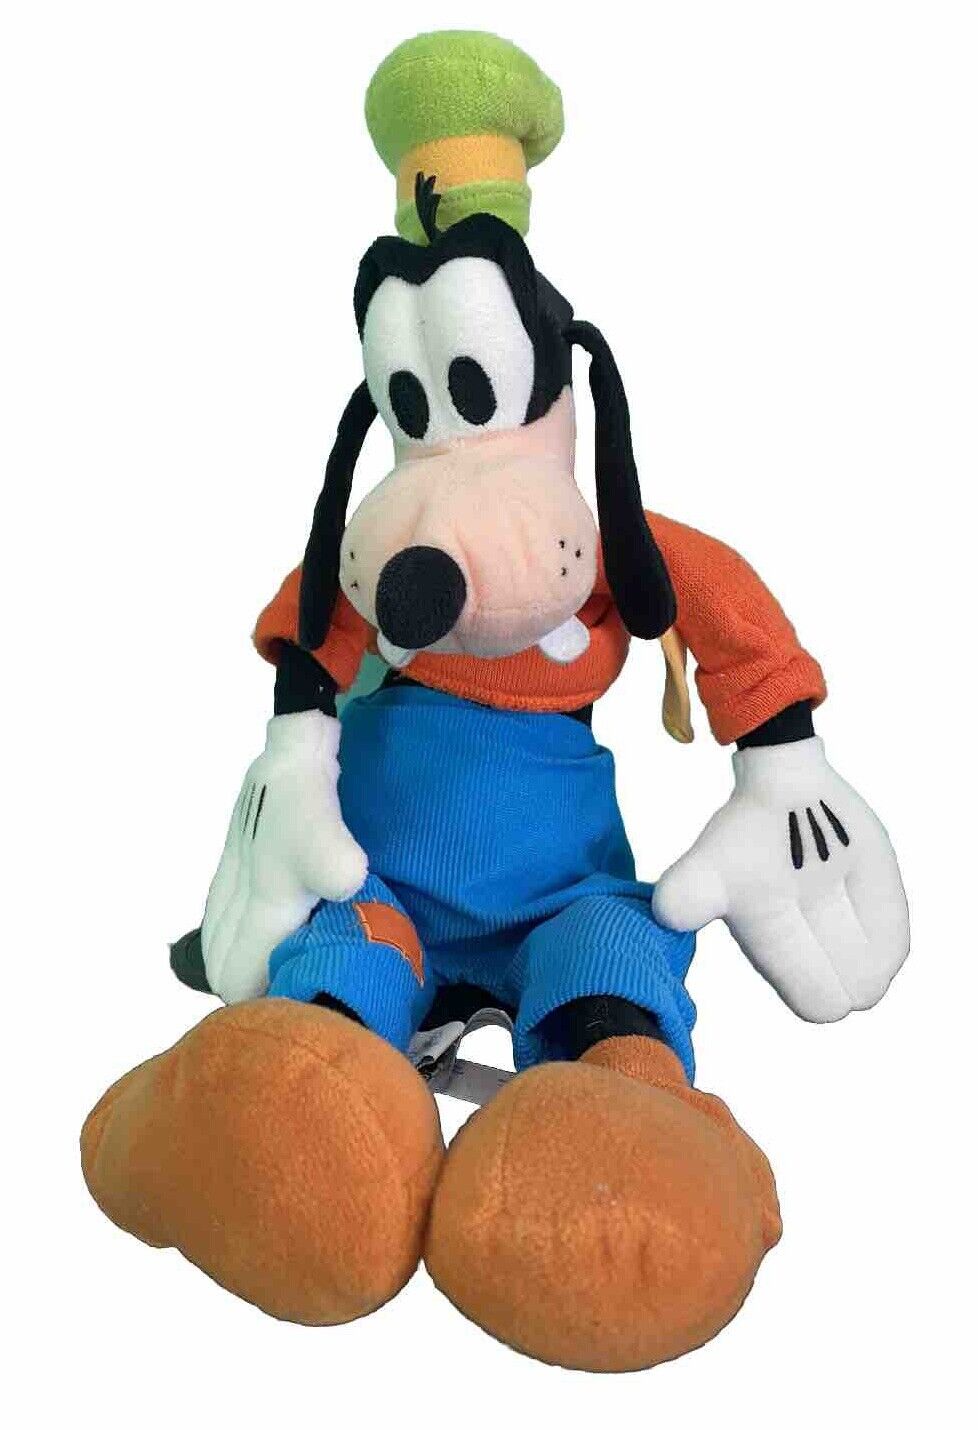 Goofy Authentic Disney Store Exclusive Genuine Original Authentic 20” Plush Doll